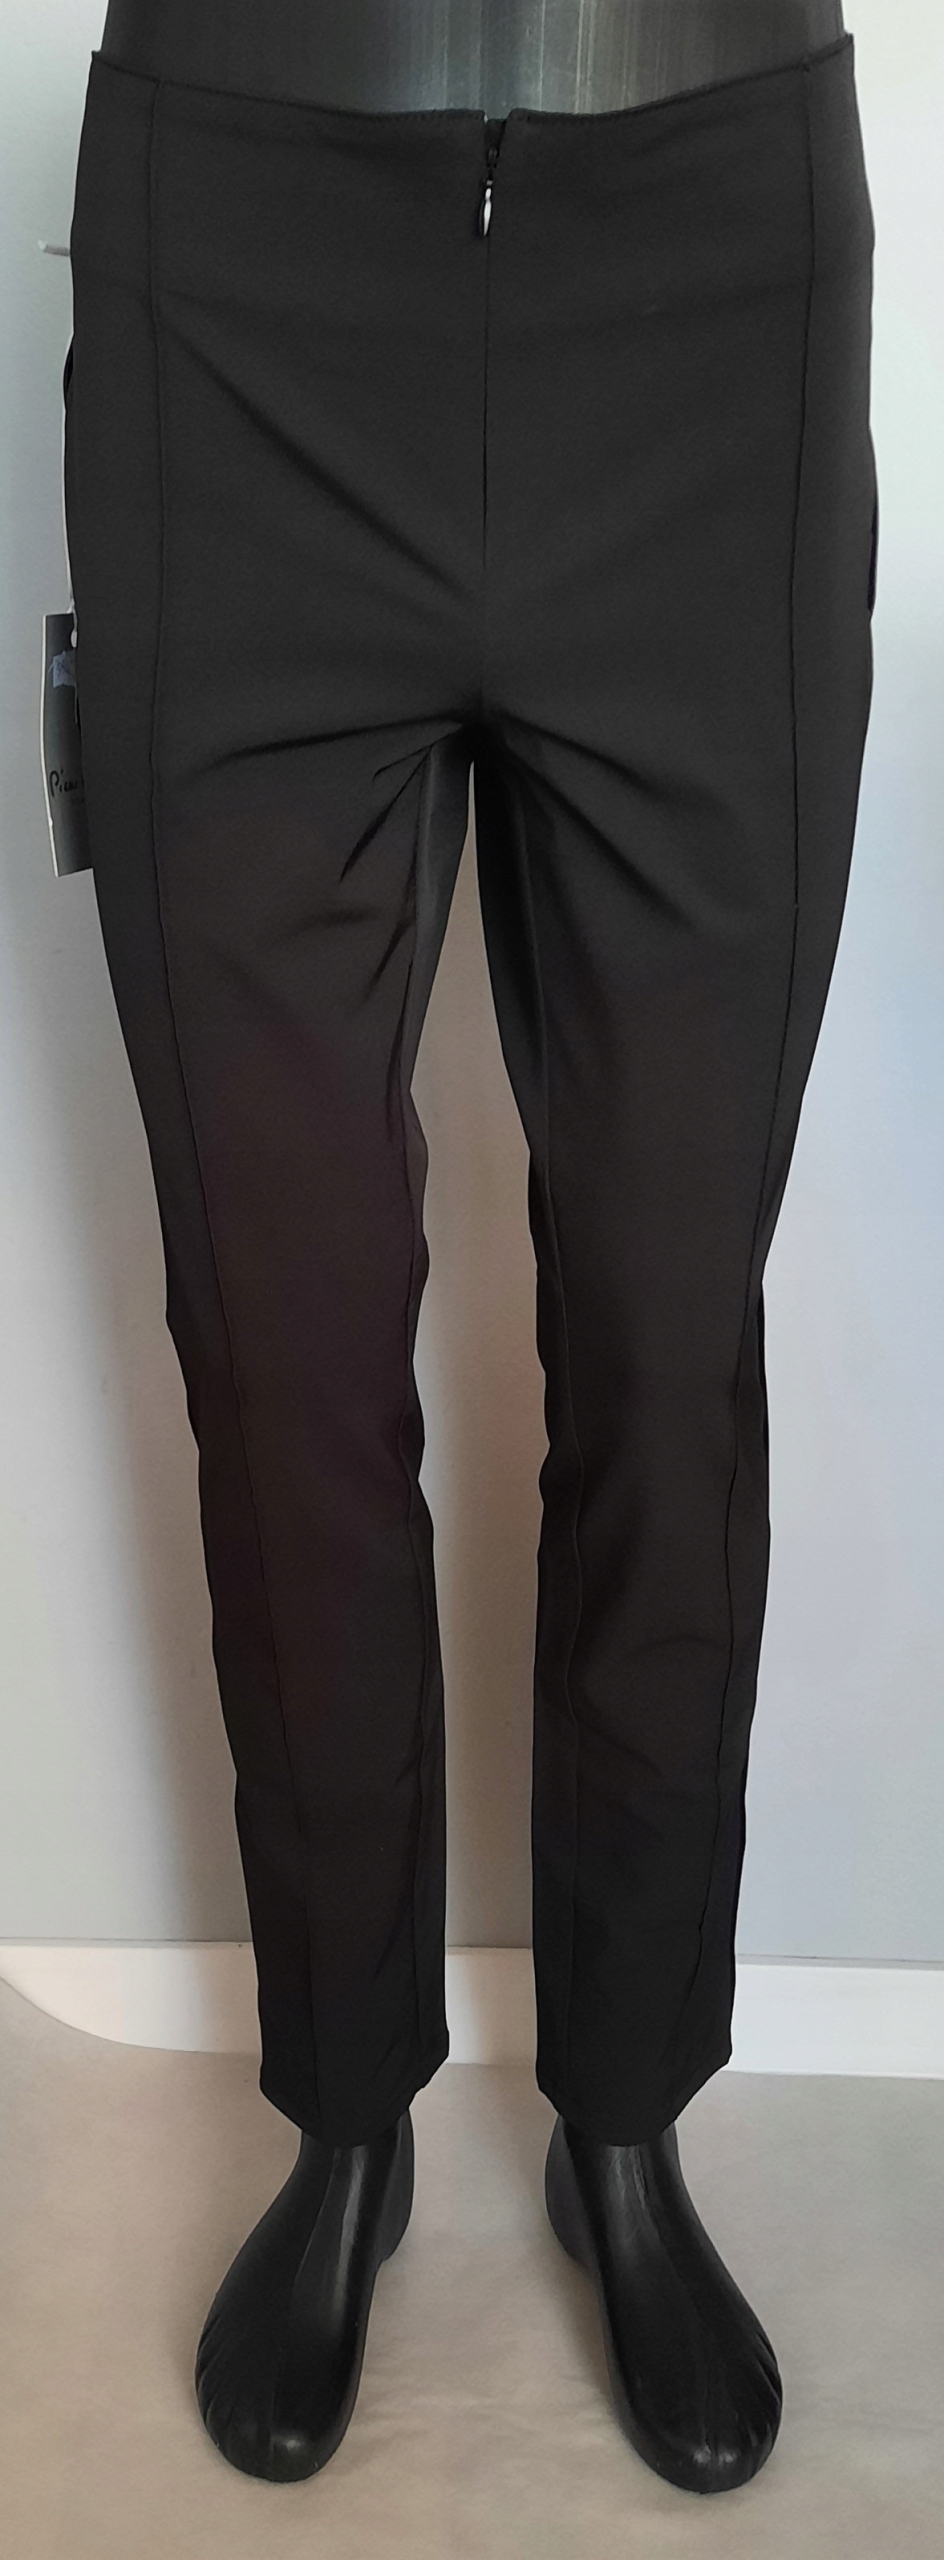 Spodnie damskie czarne Pierre Cardin r. W31 L32 12178787494 - Allegro.pl